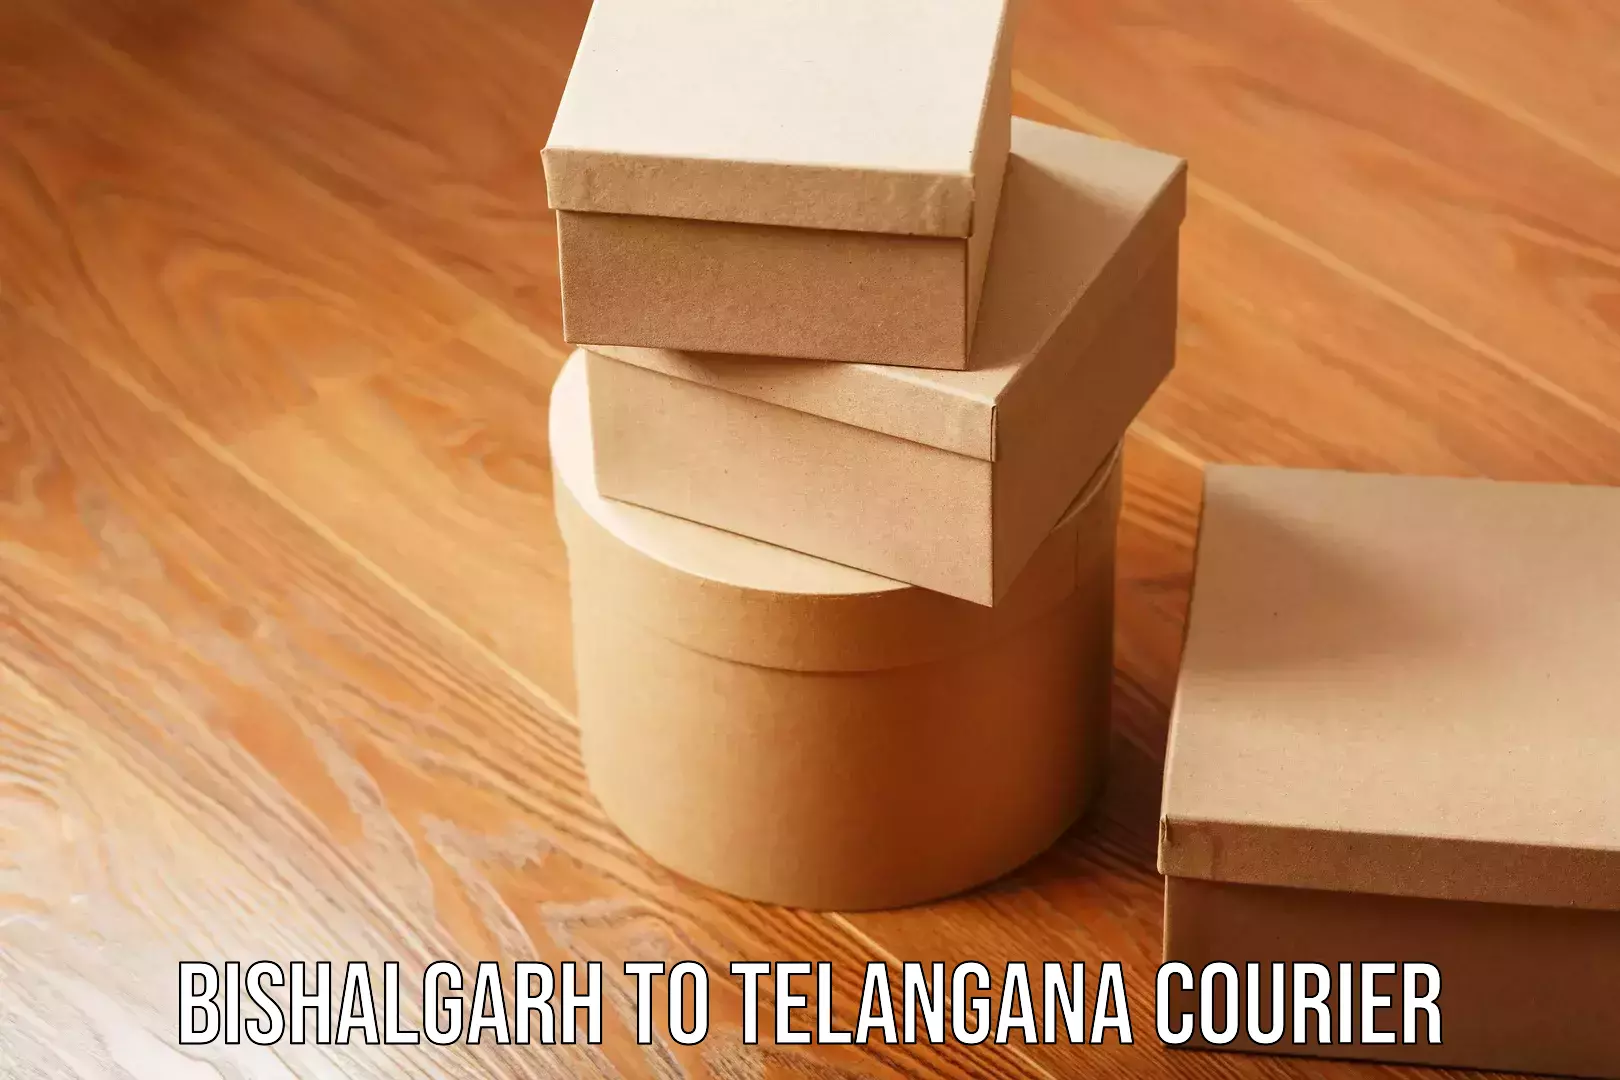 Premium courier solutions Bishalgarh to Telangana